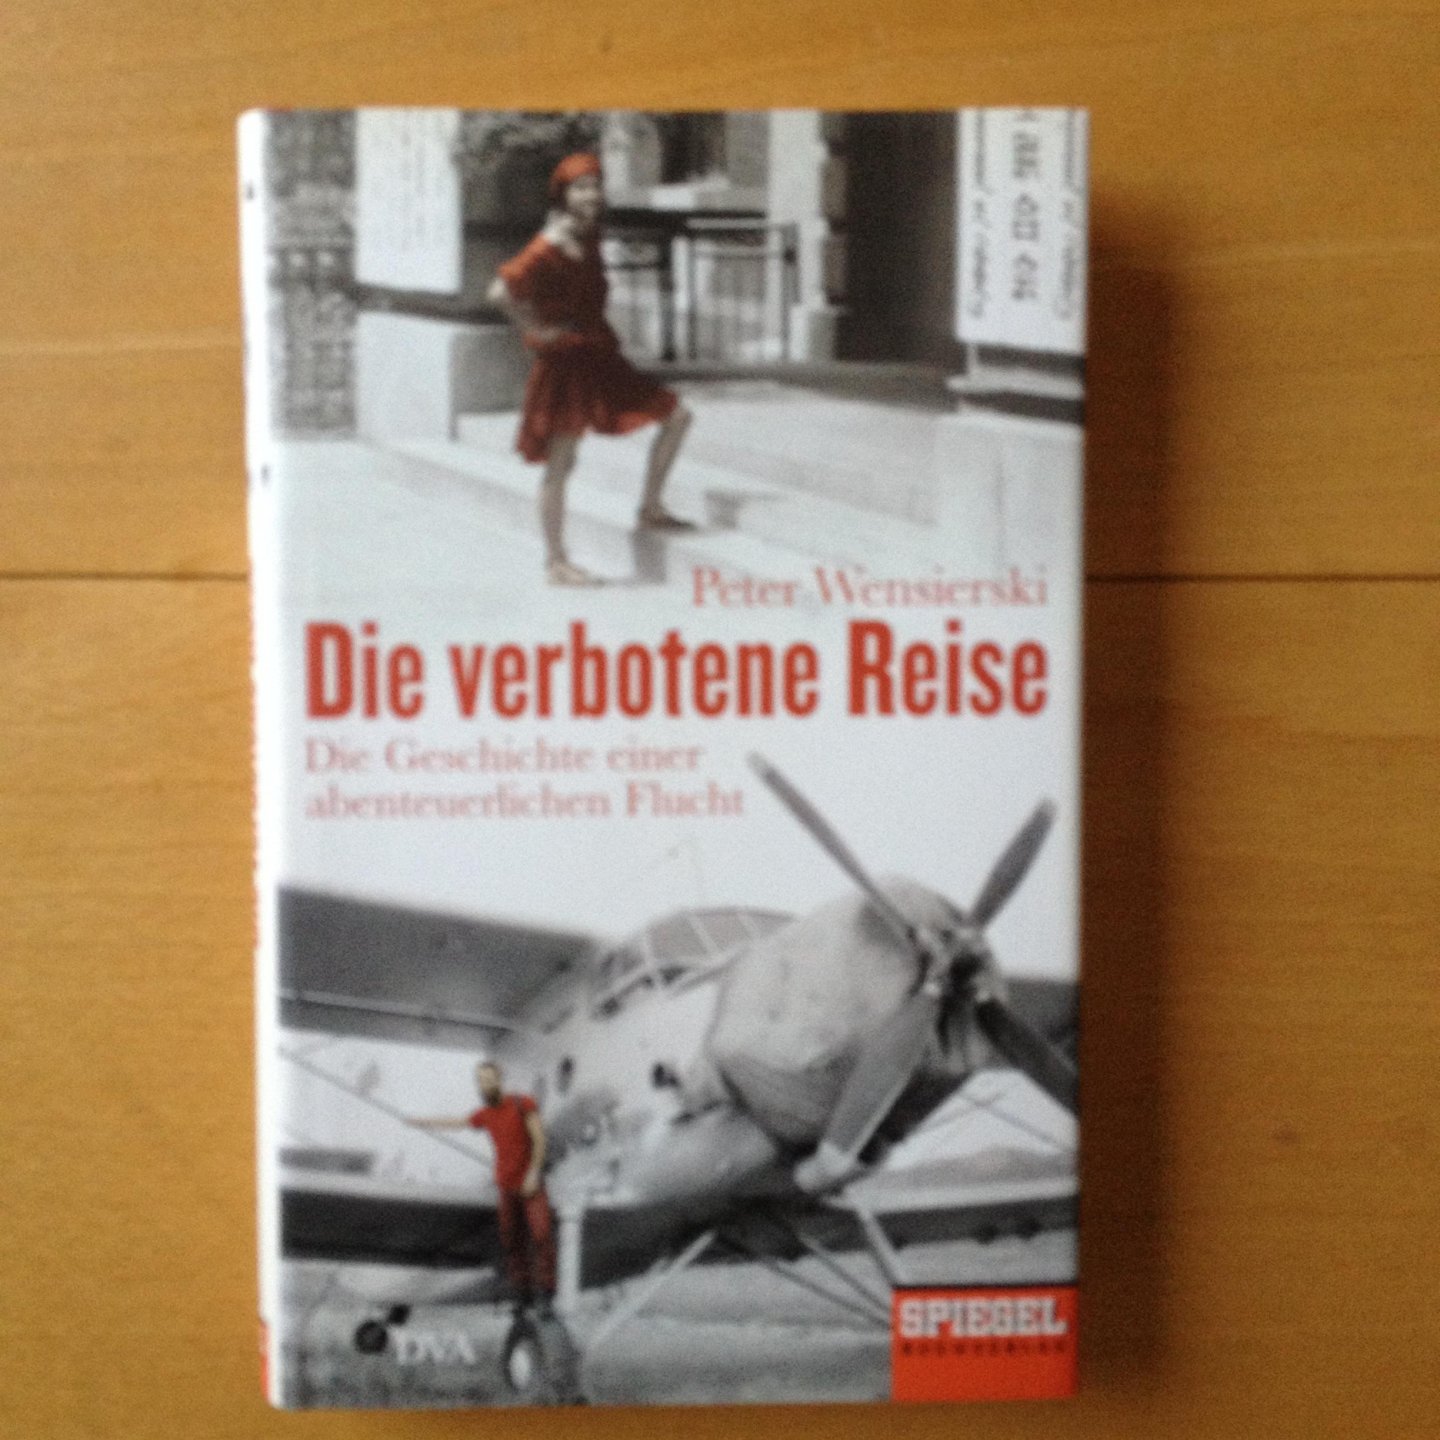 Wensierski, Peter - Die verbotene Reise / Die Geschichte einer abenteuerlichen Flucht - Ein SPIEGEL-Buch